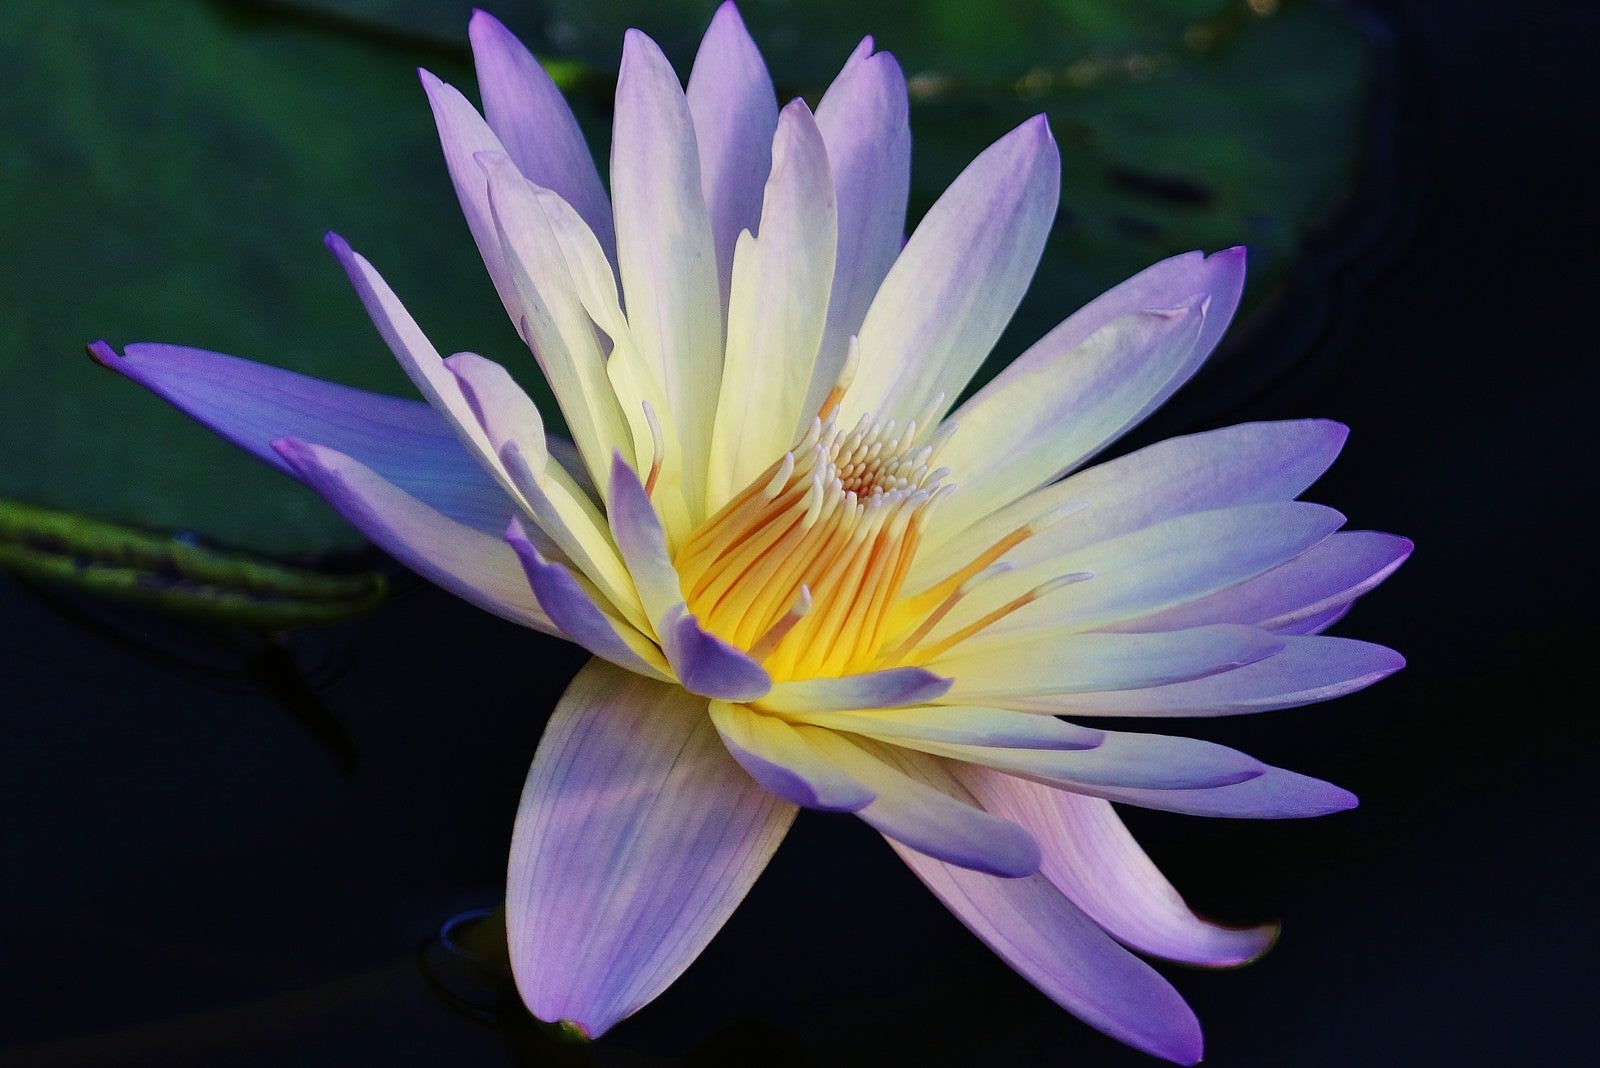 「紫色の睡蓮の花」の写真